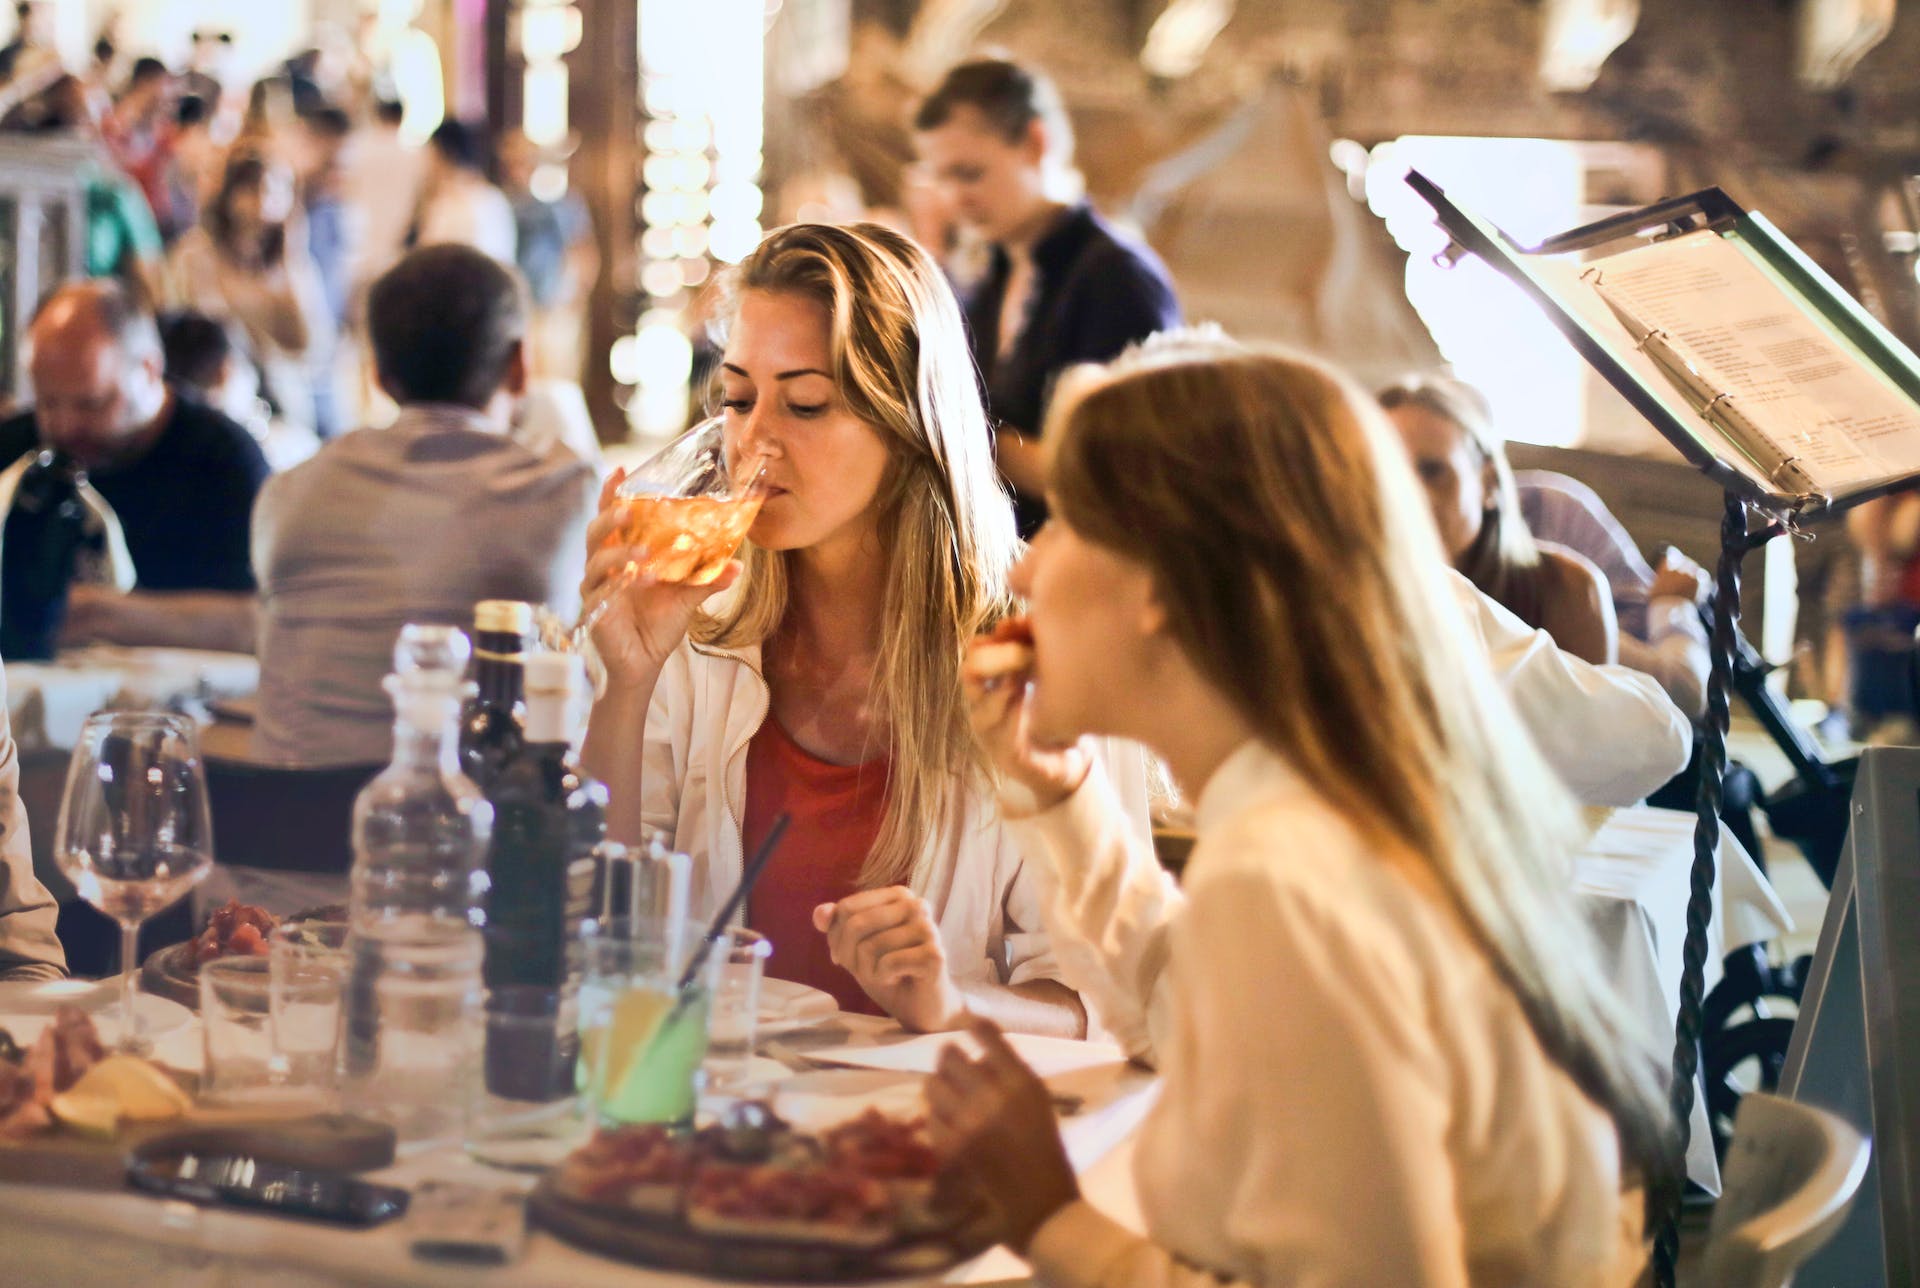 Frauen beim Essen in einem Restaurant | Quelle: Pexels